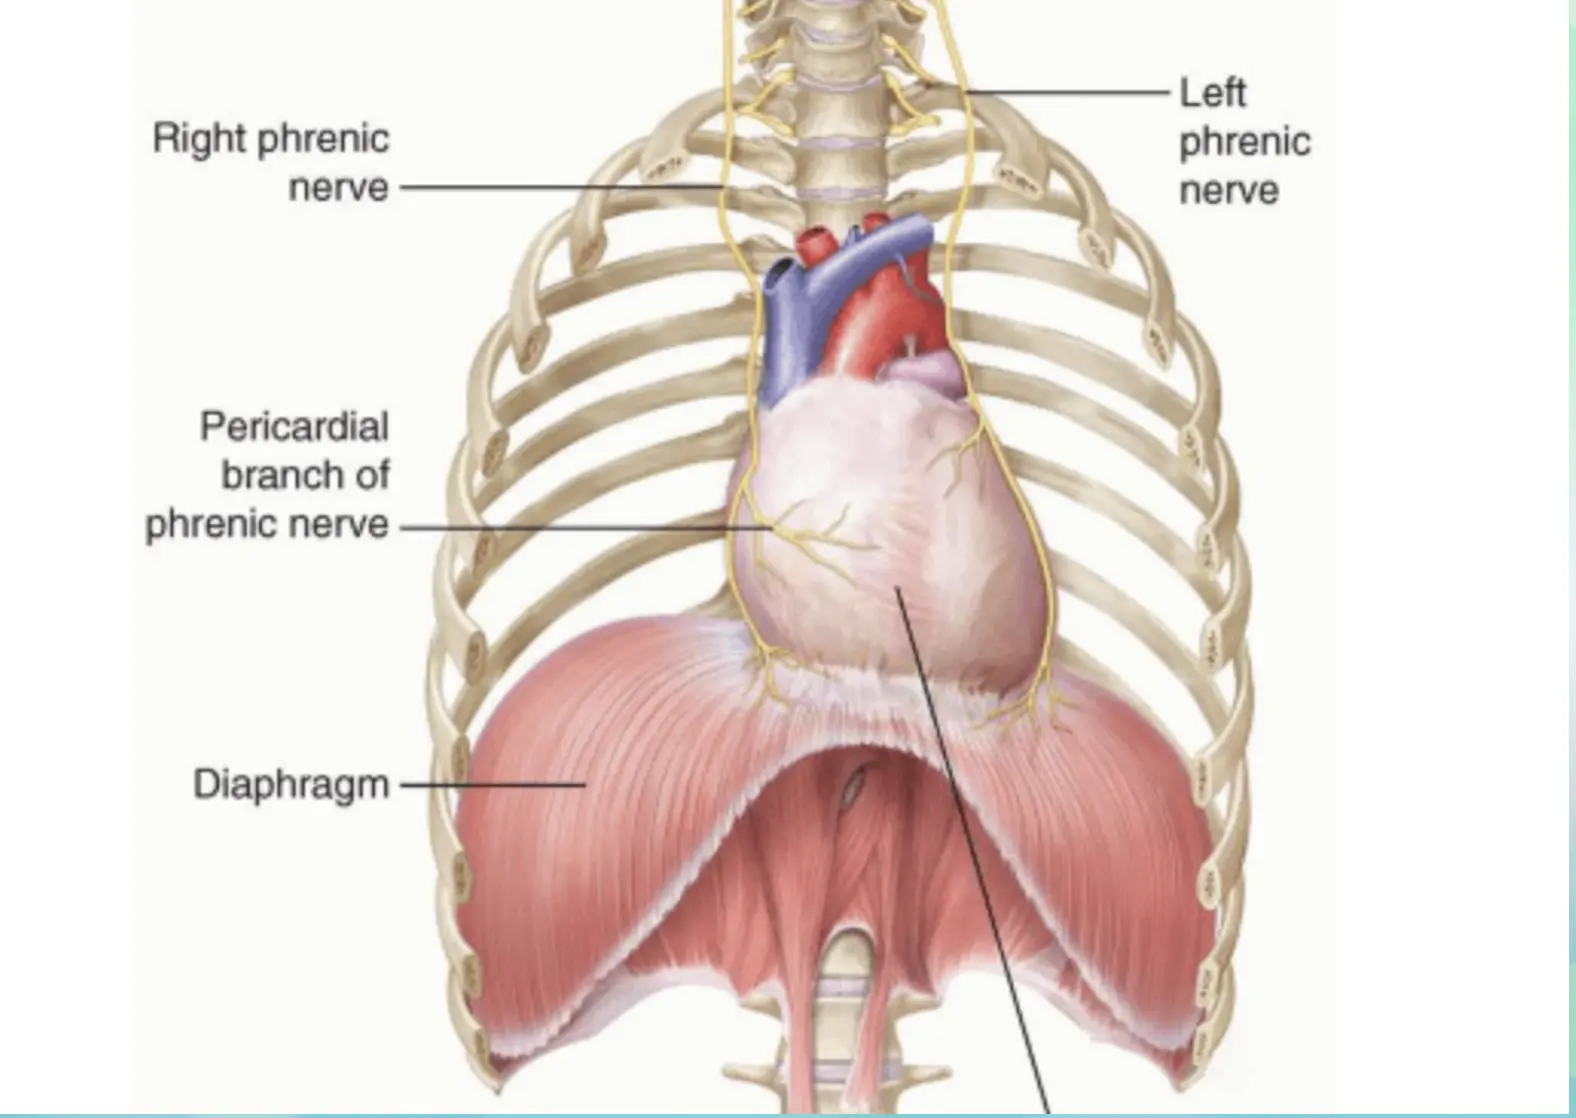 Diaphragm activates parasympathetic system